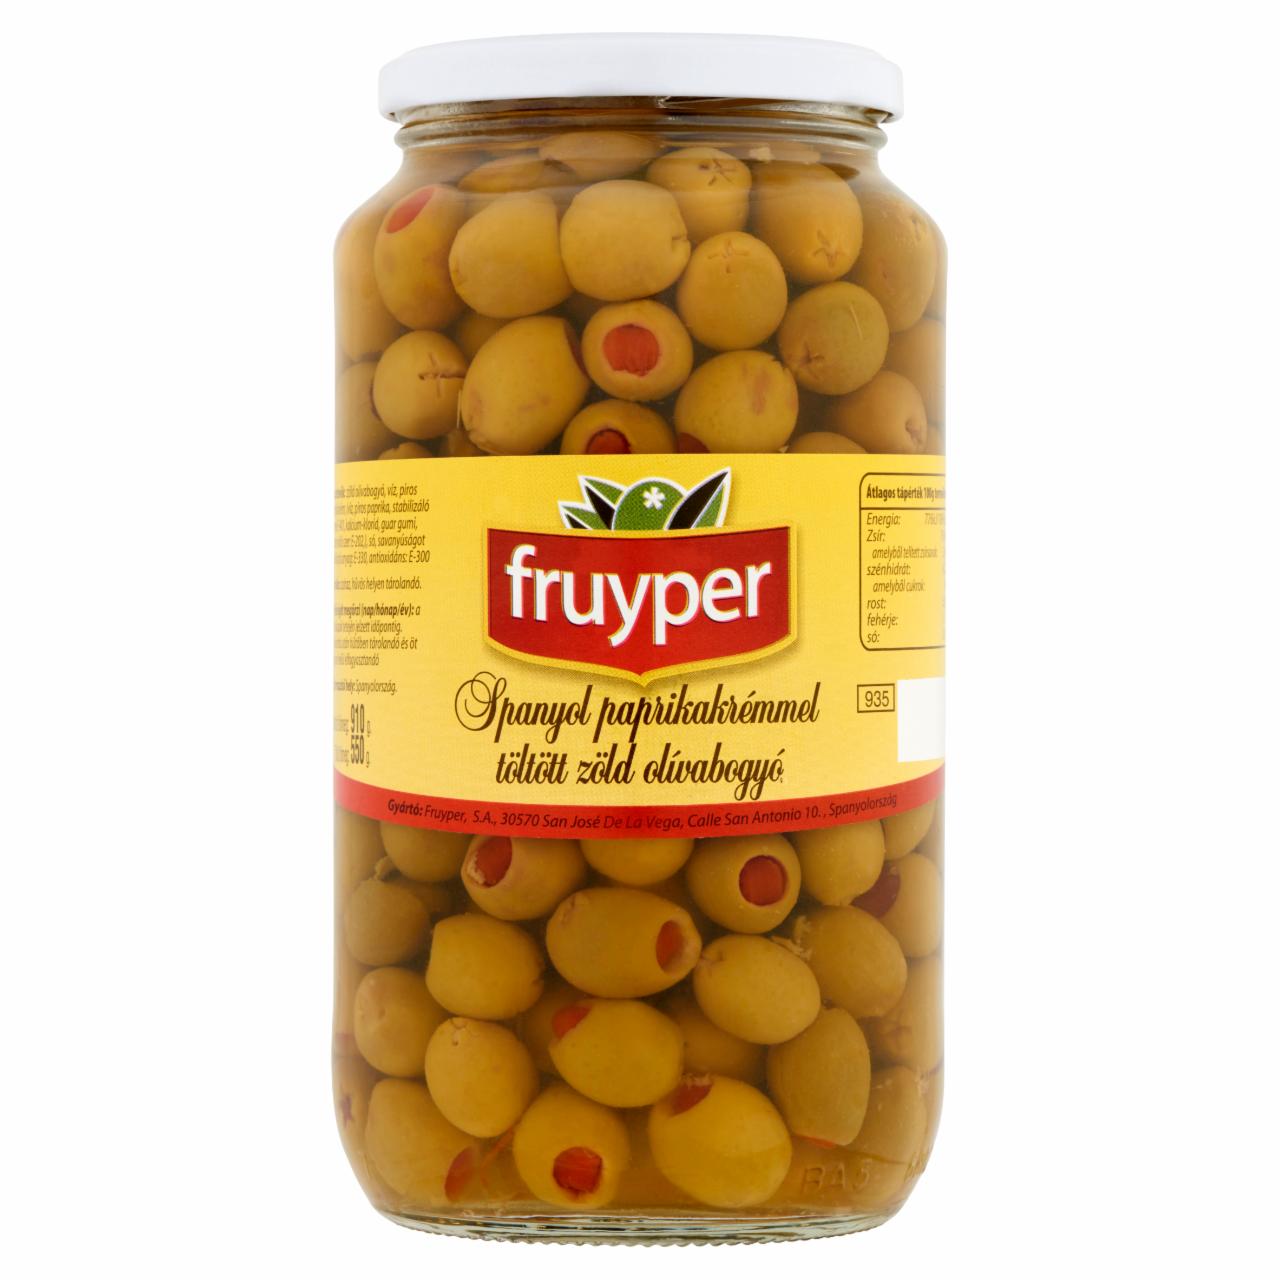 Képek - Fruyper spanyol paprikakrémmel töltött zöld olívabogyó 910 g